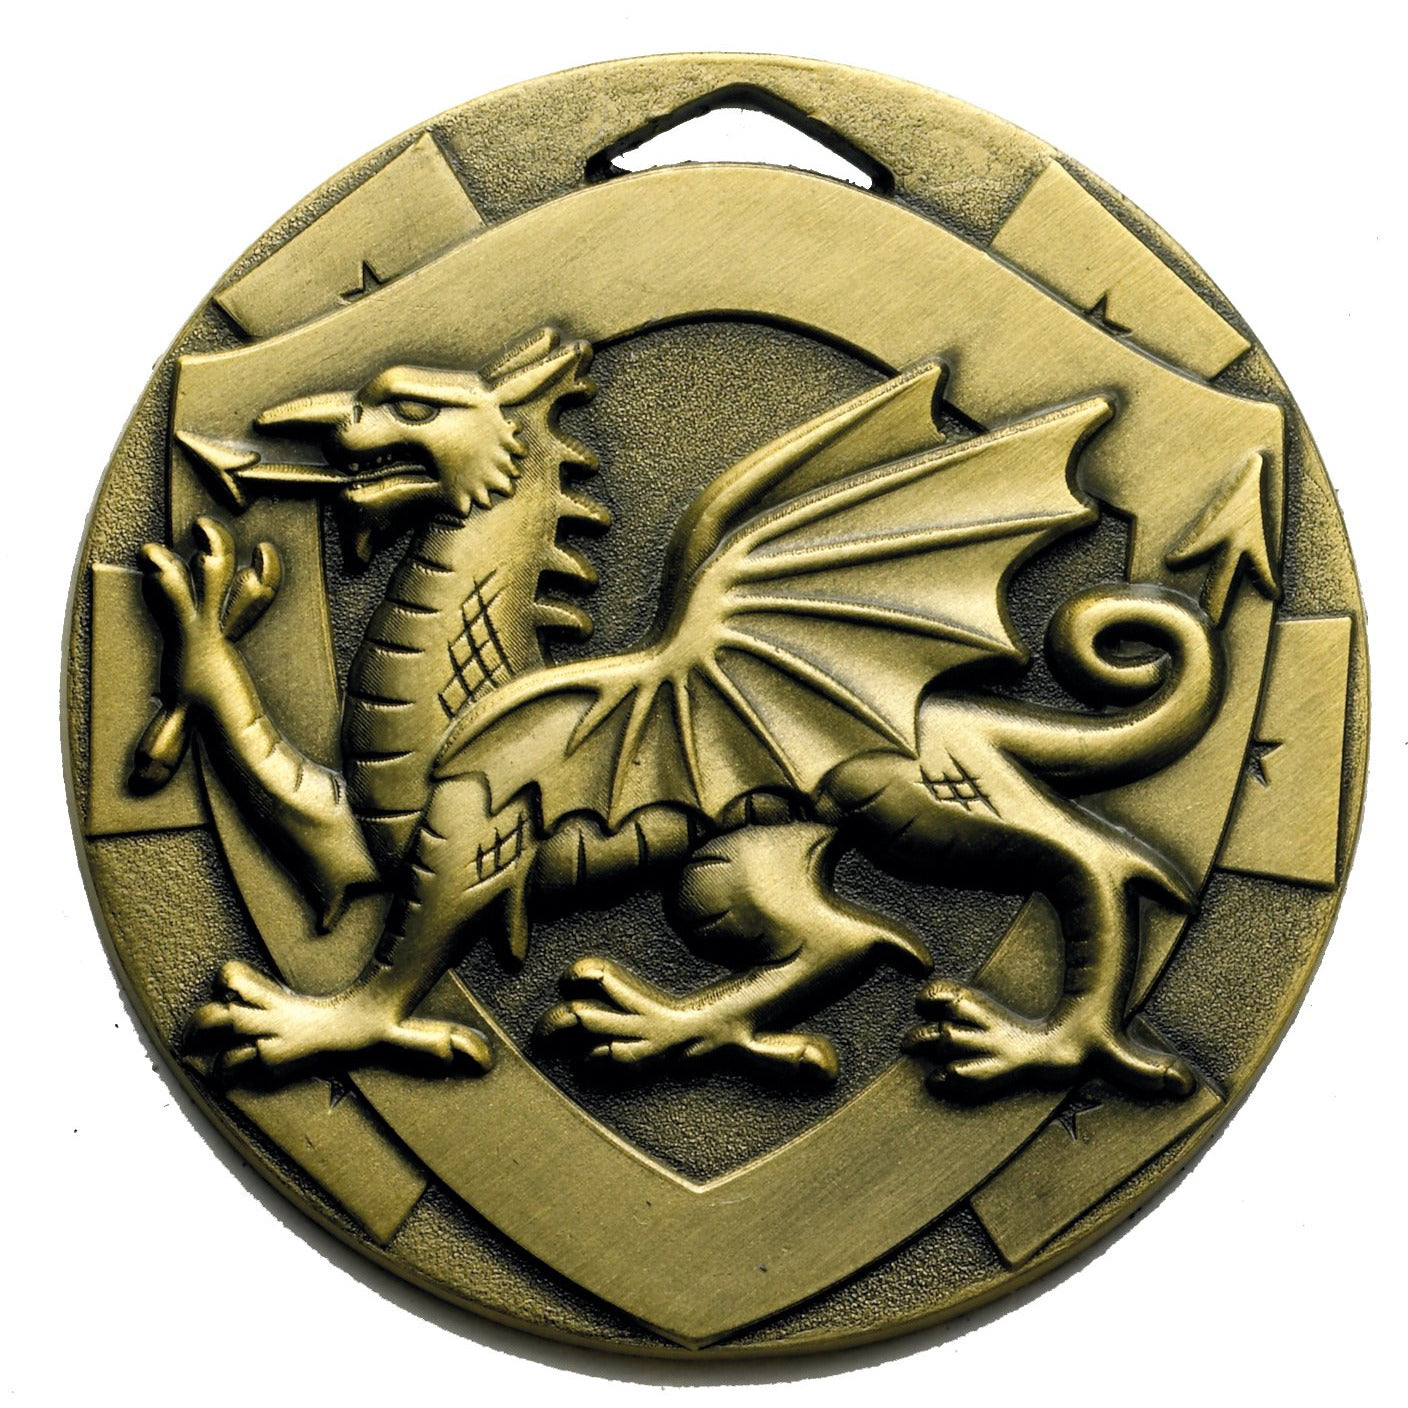 Welsh Dragon Medal 50mm